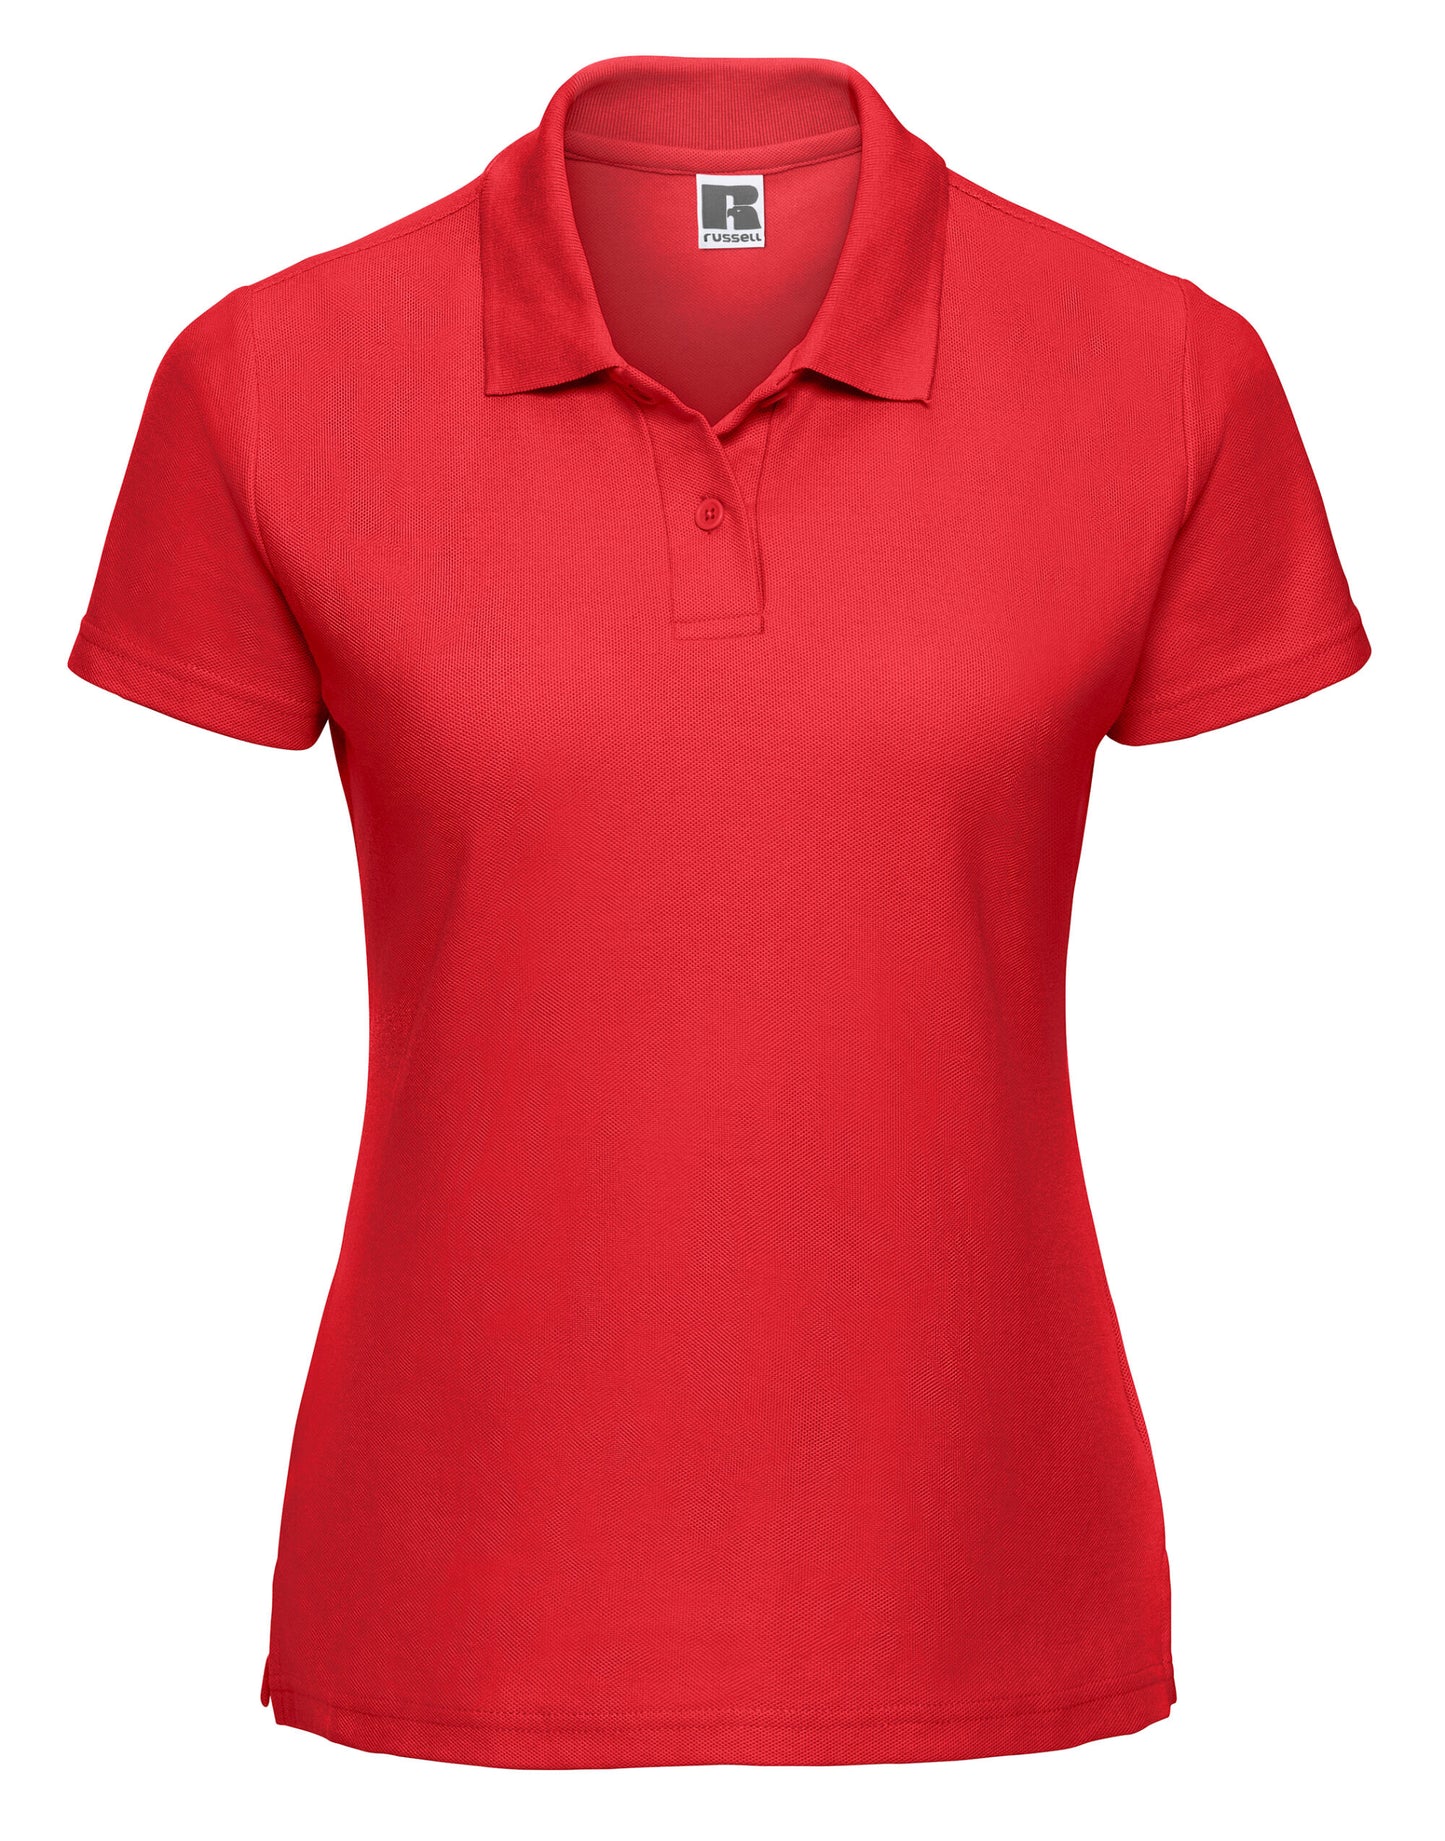 539F Jerzees Womens Polo Shirt